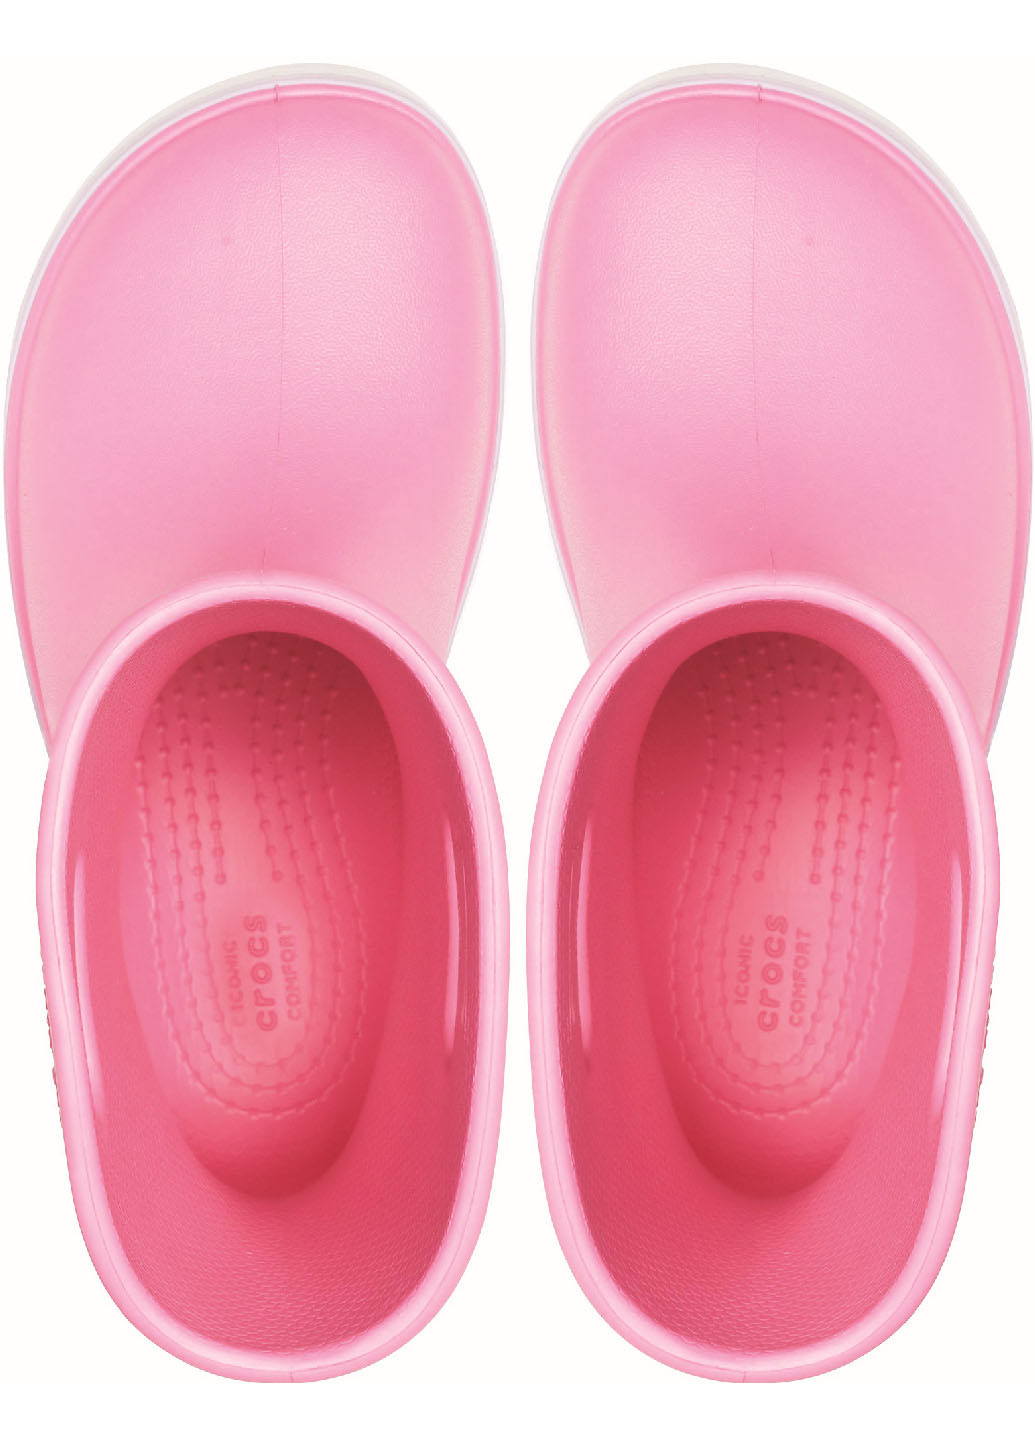 Розовые резиновые сапоги Crocs